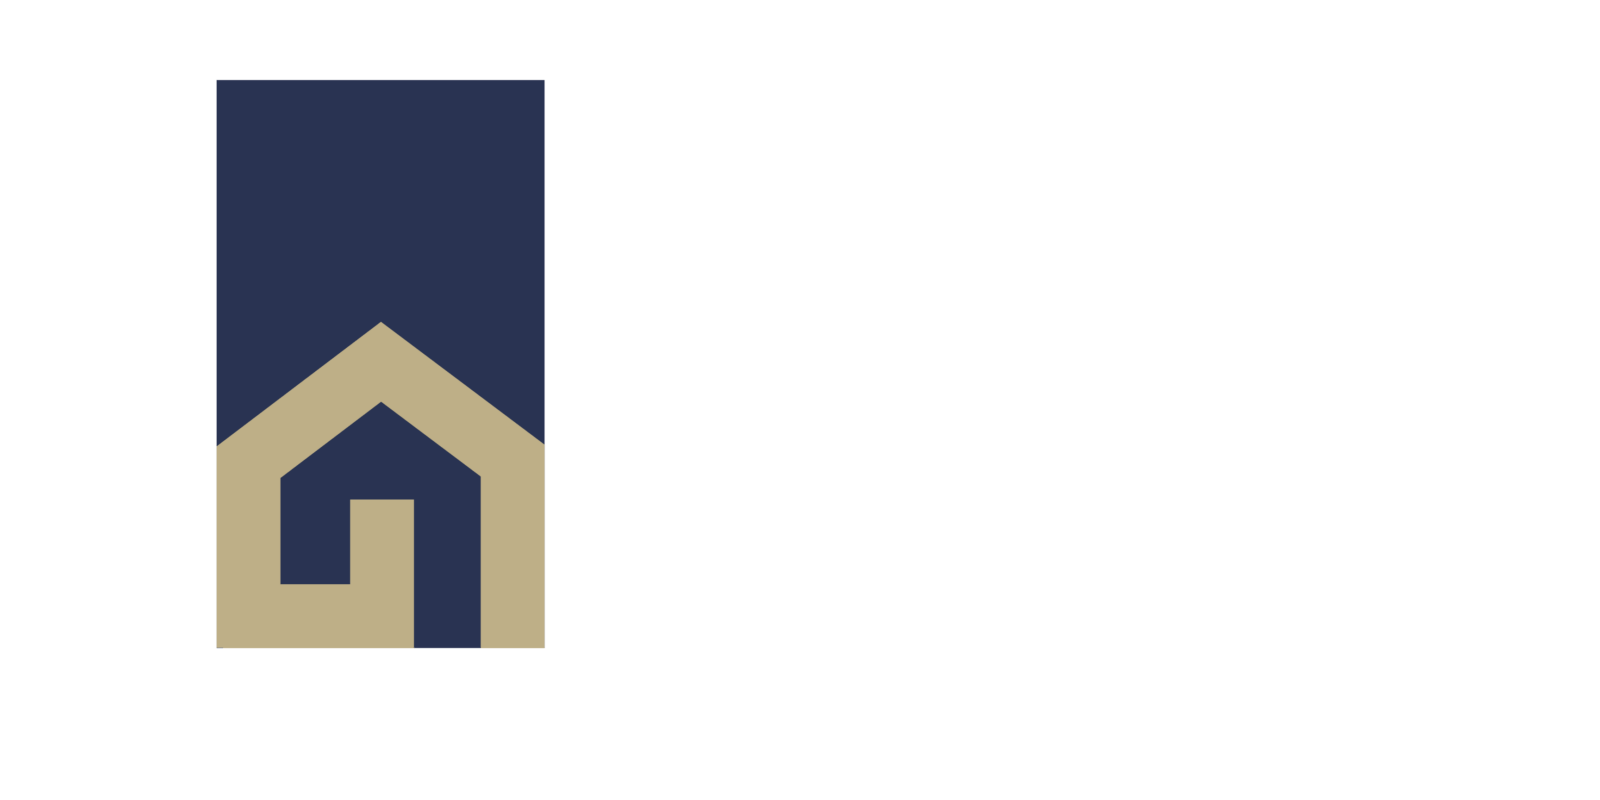 keenan giles real estate logo